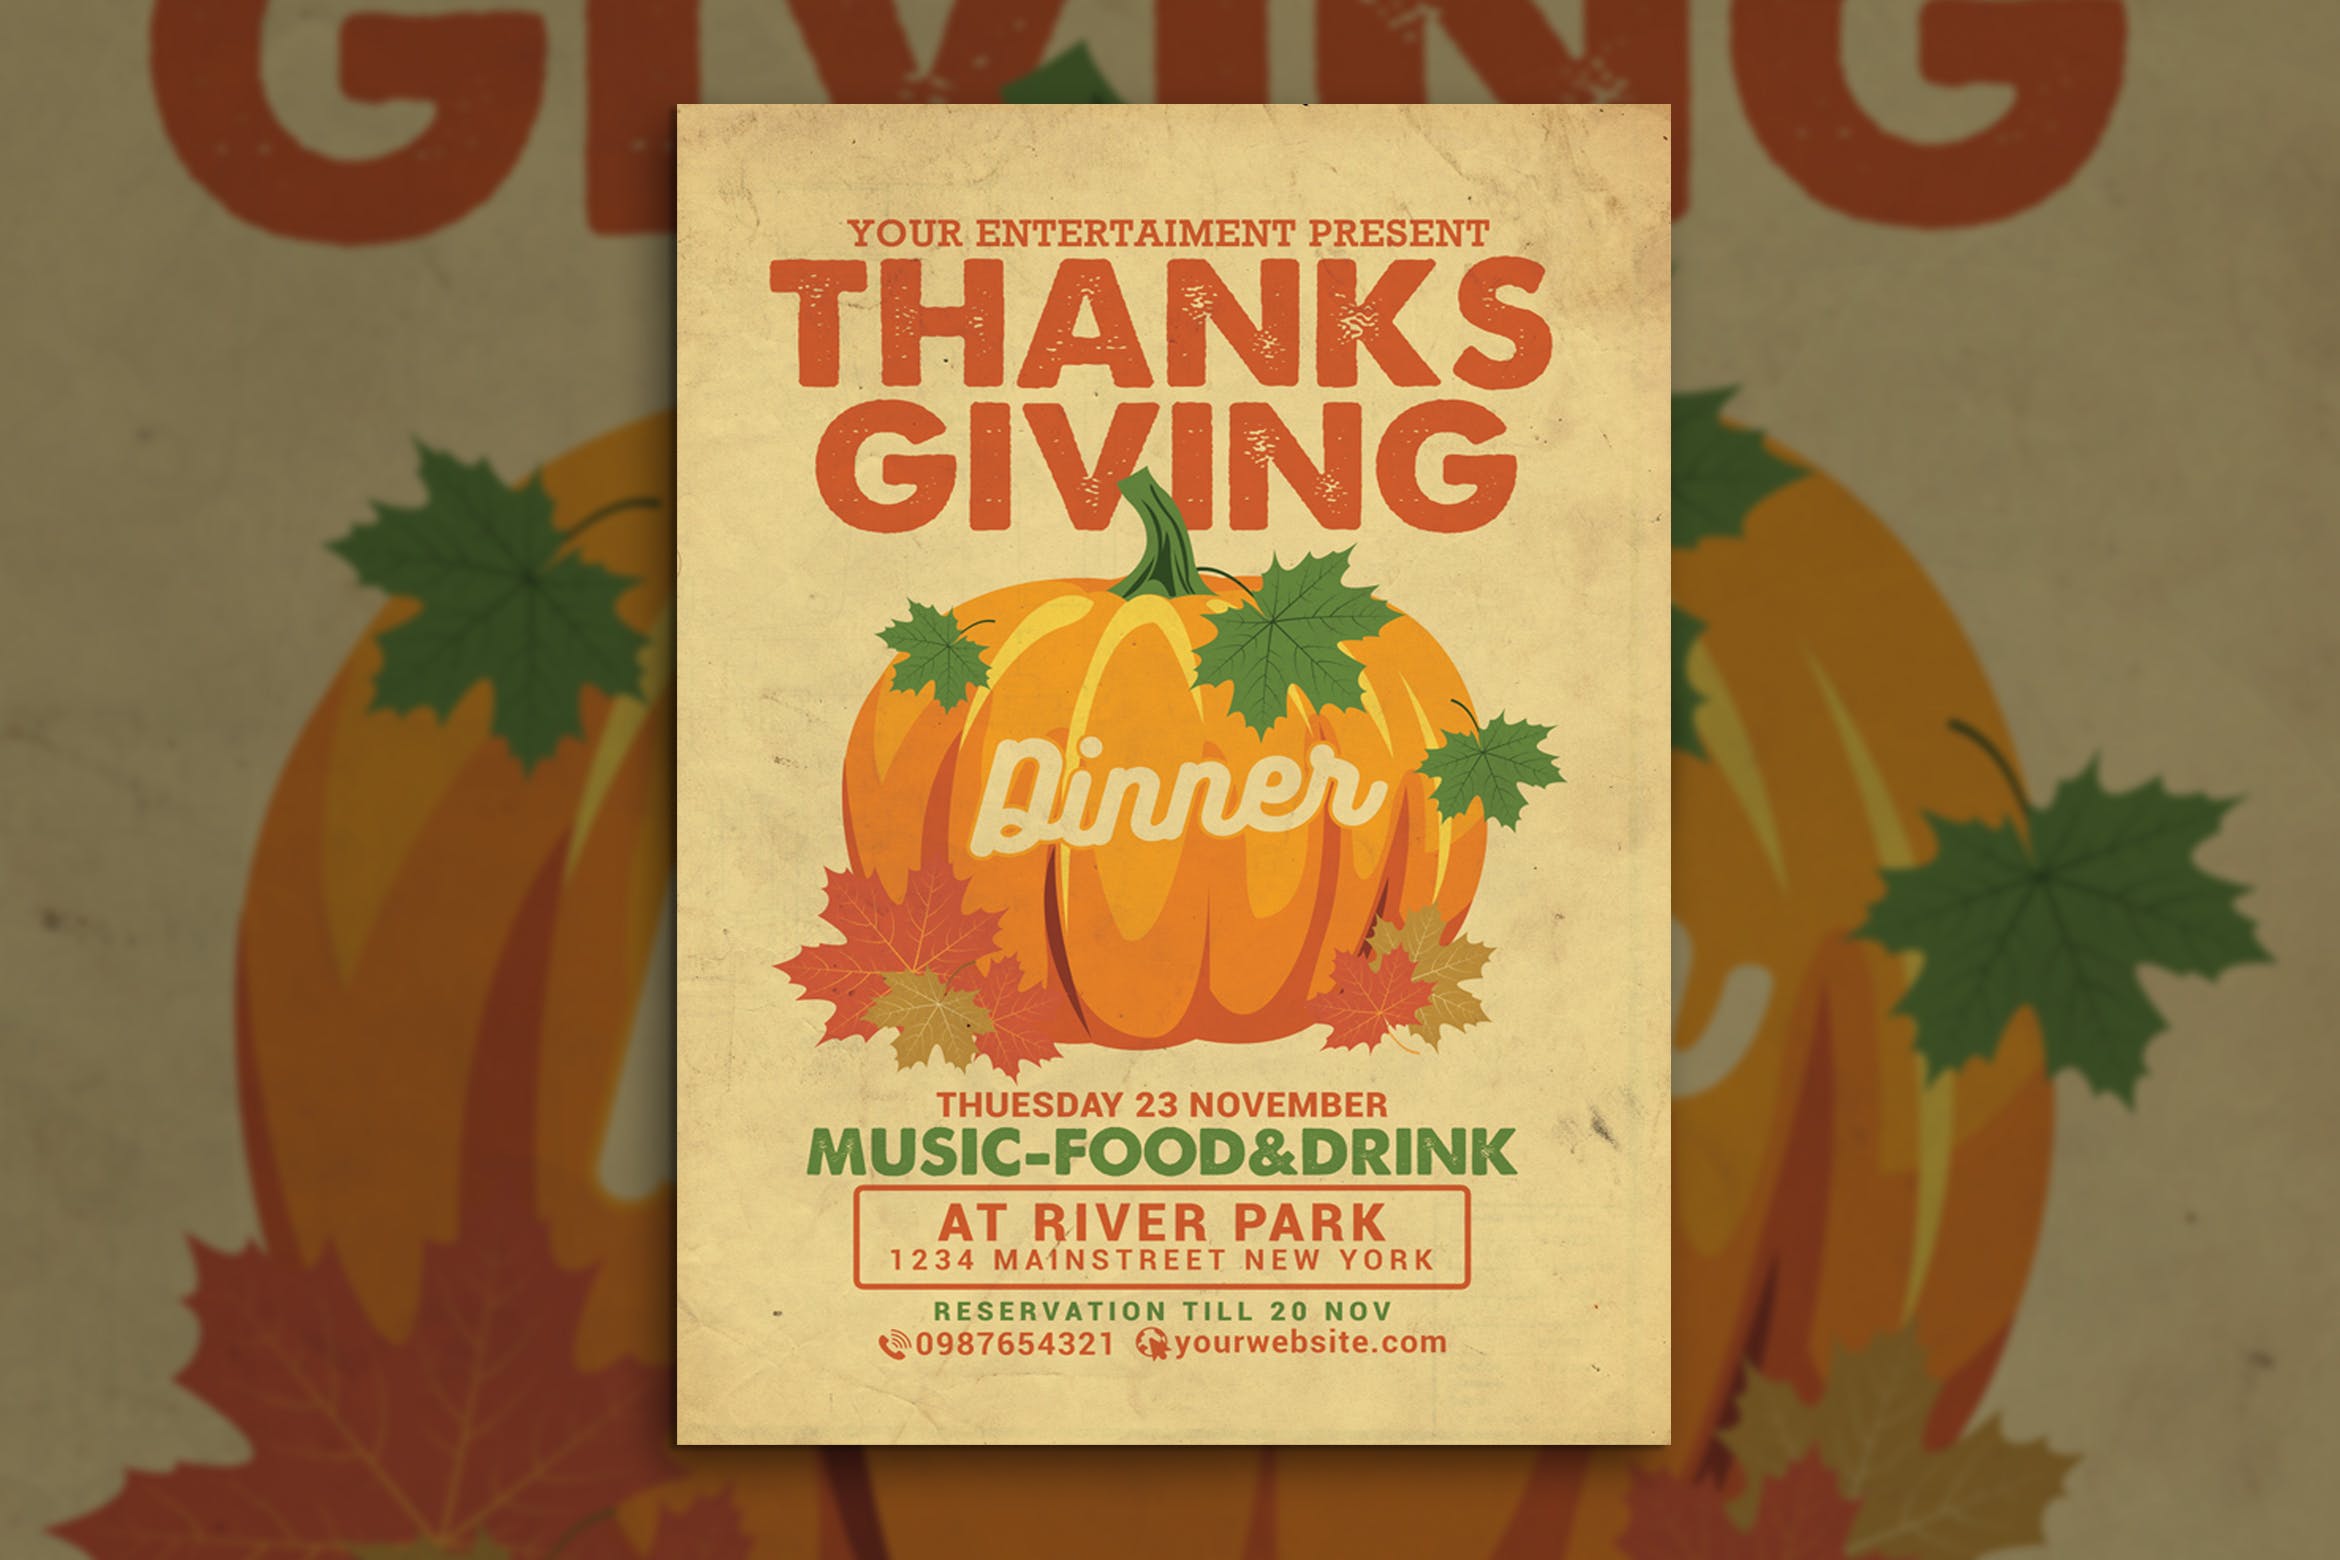 复古设计风格感恩节晚宴活动海报传单设计模板 Thanksgiving Dinner Flyer插图